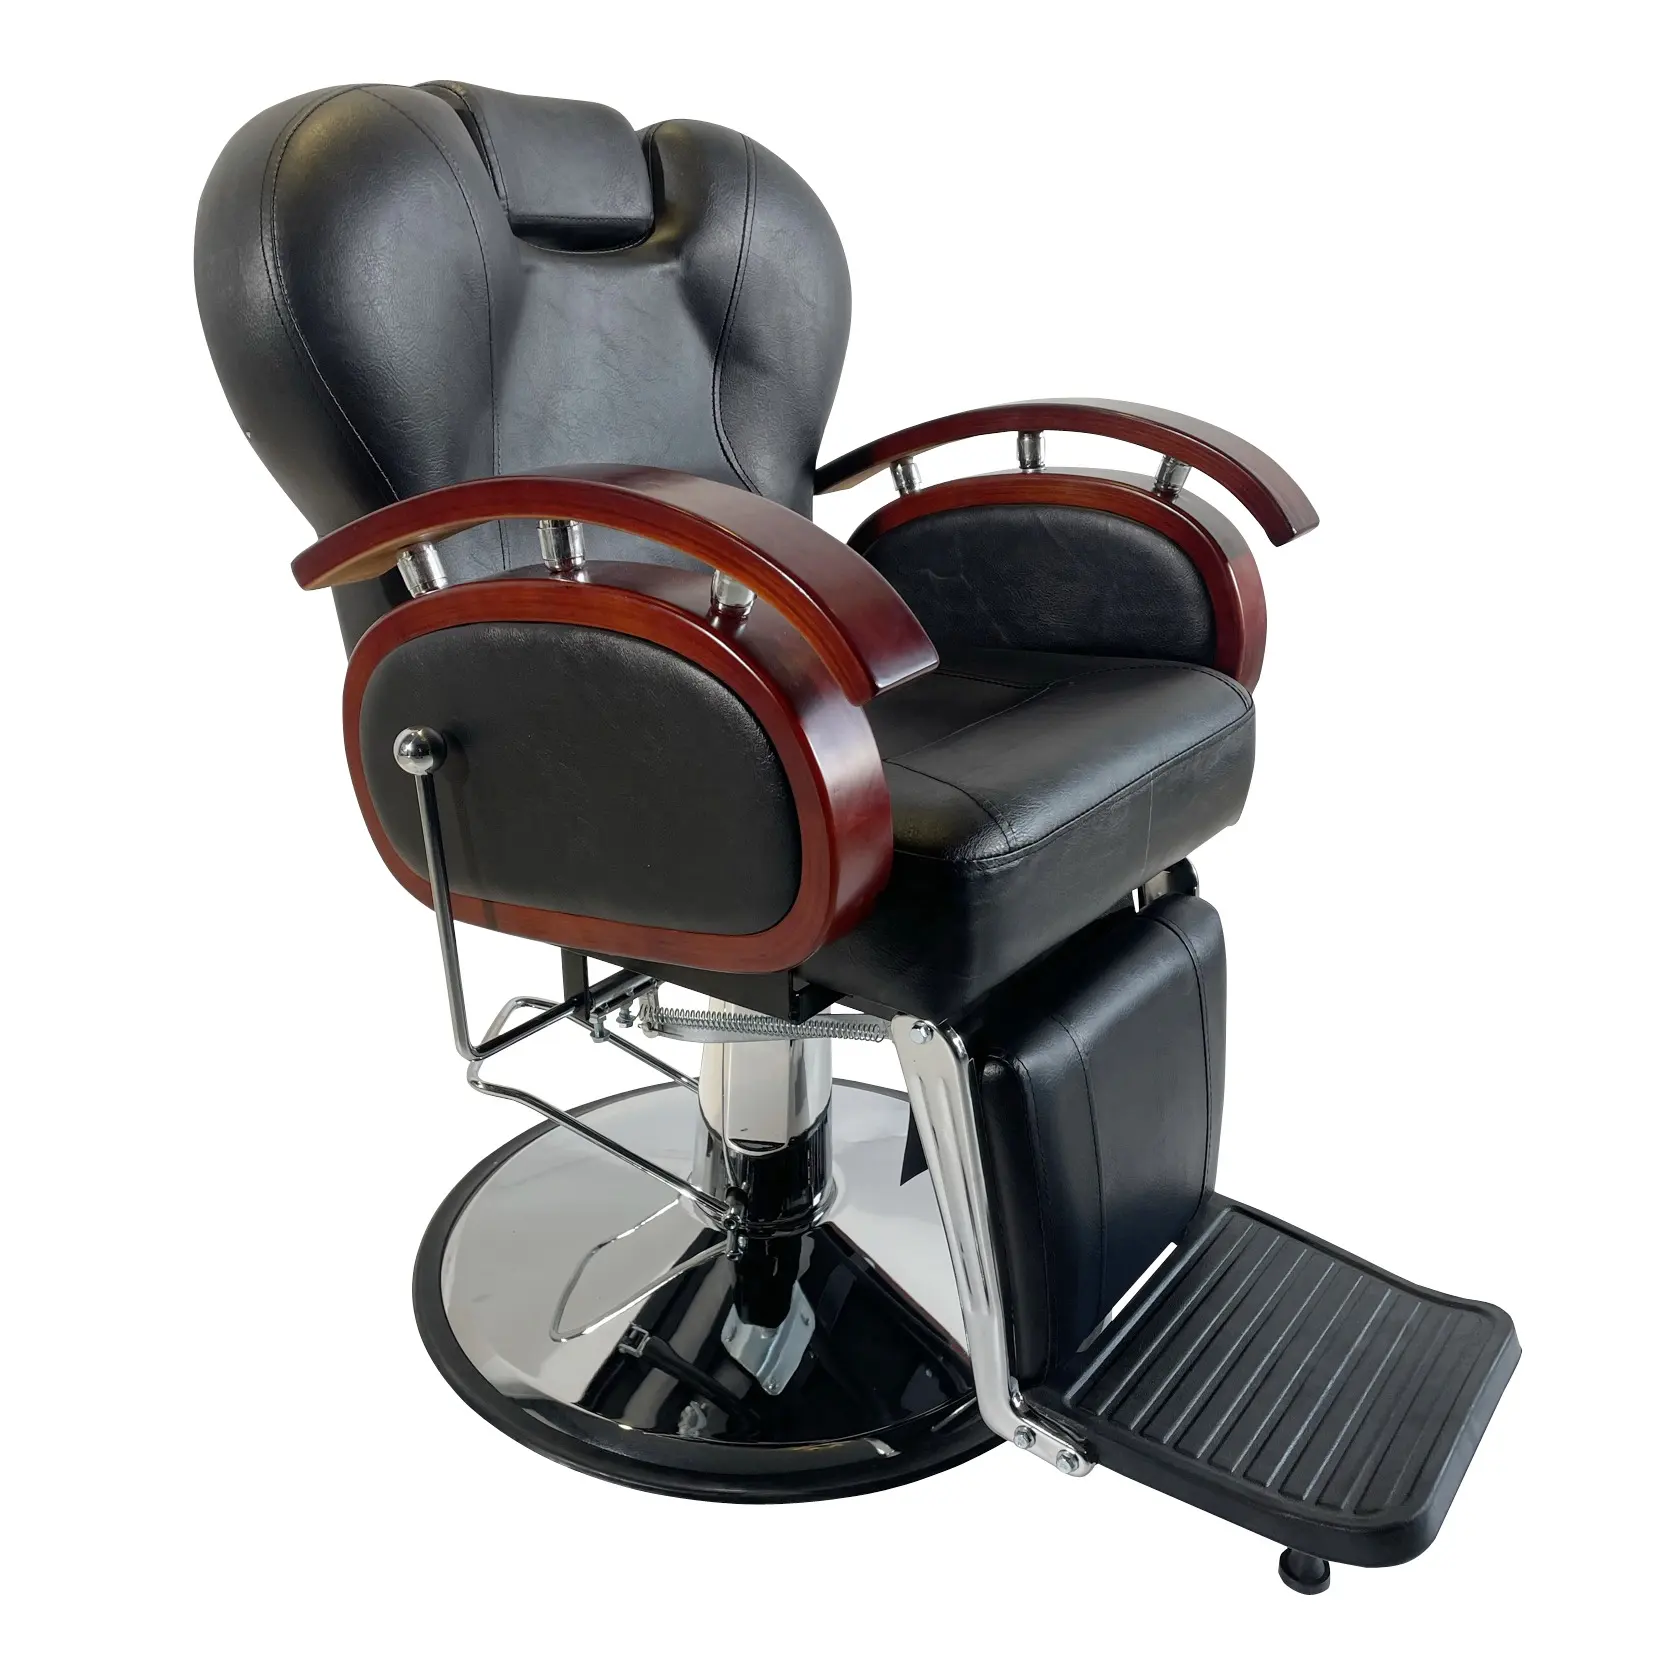 Sedie da barbiere nere all'ingrosso/sedia da barbiere da salone a buon mercato hotsale/sedia da barbiere